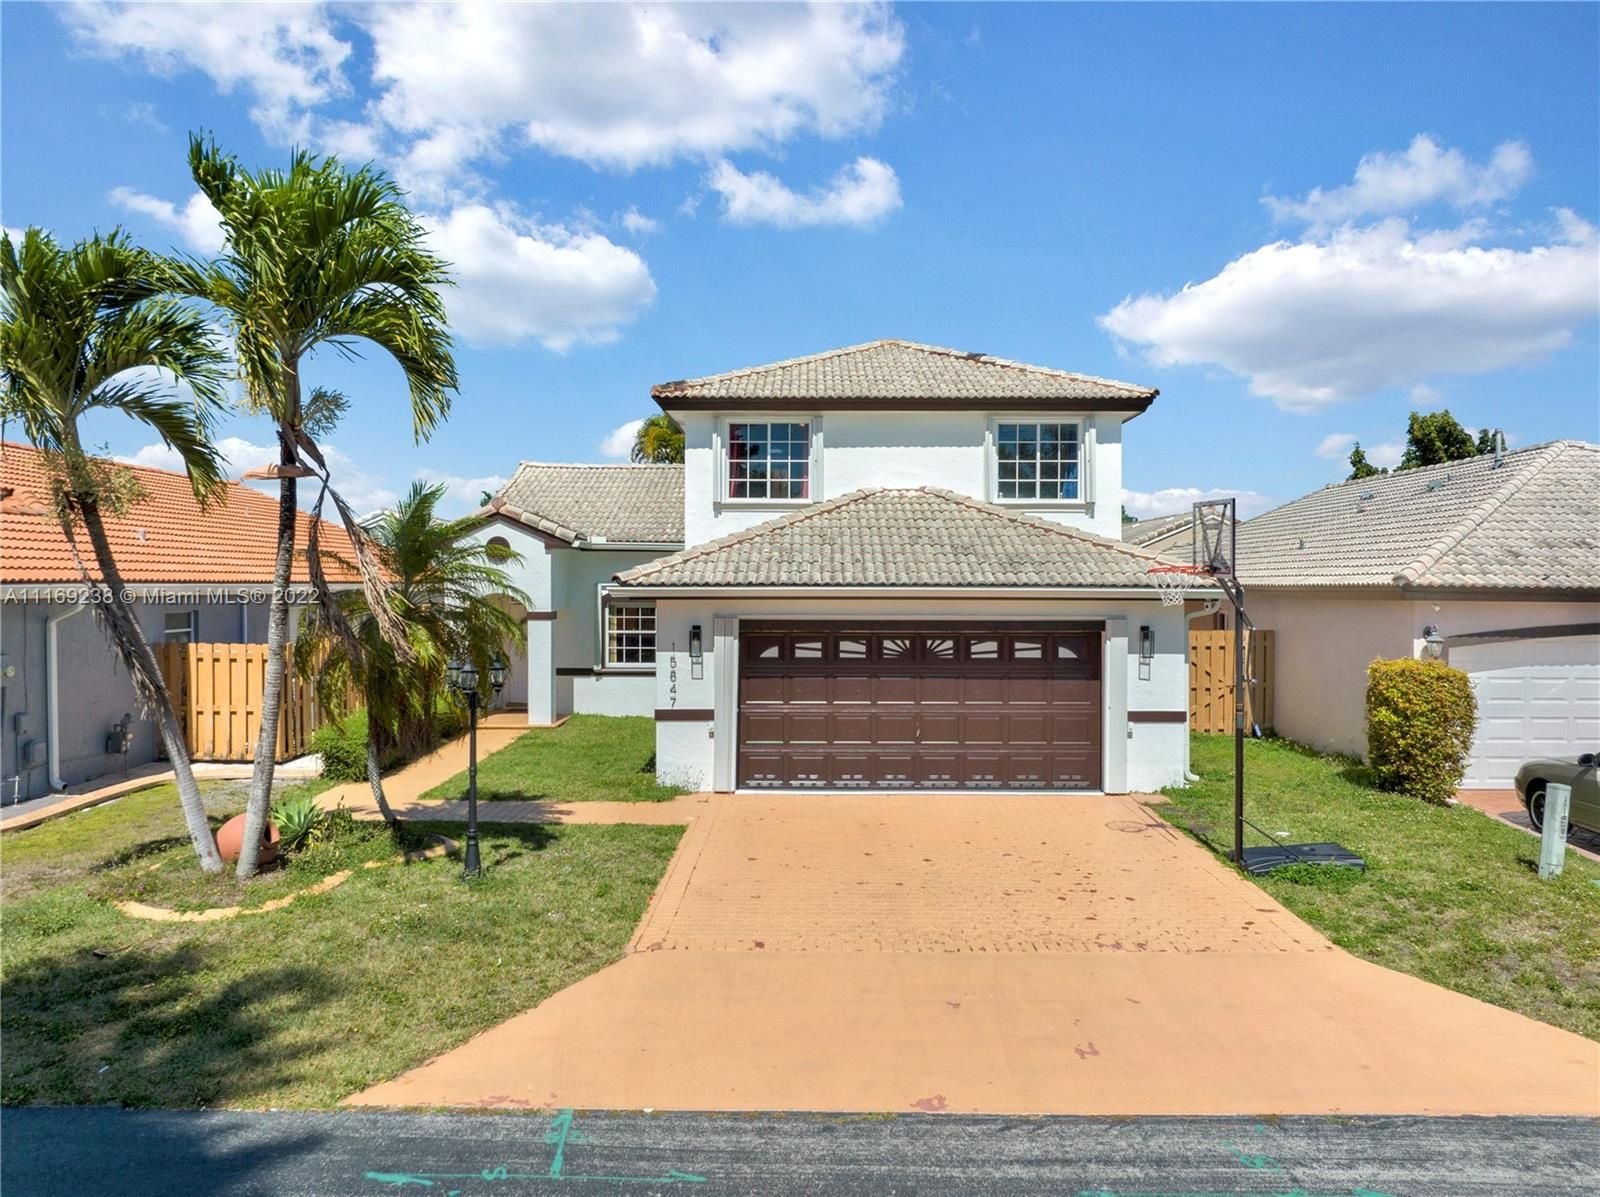 Real estate property located at 15847 85th Ln, Miami-Dade County, Miami, FL